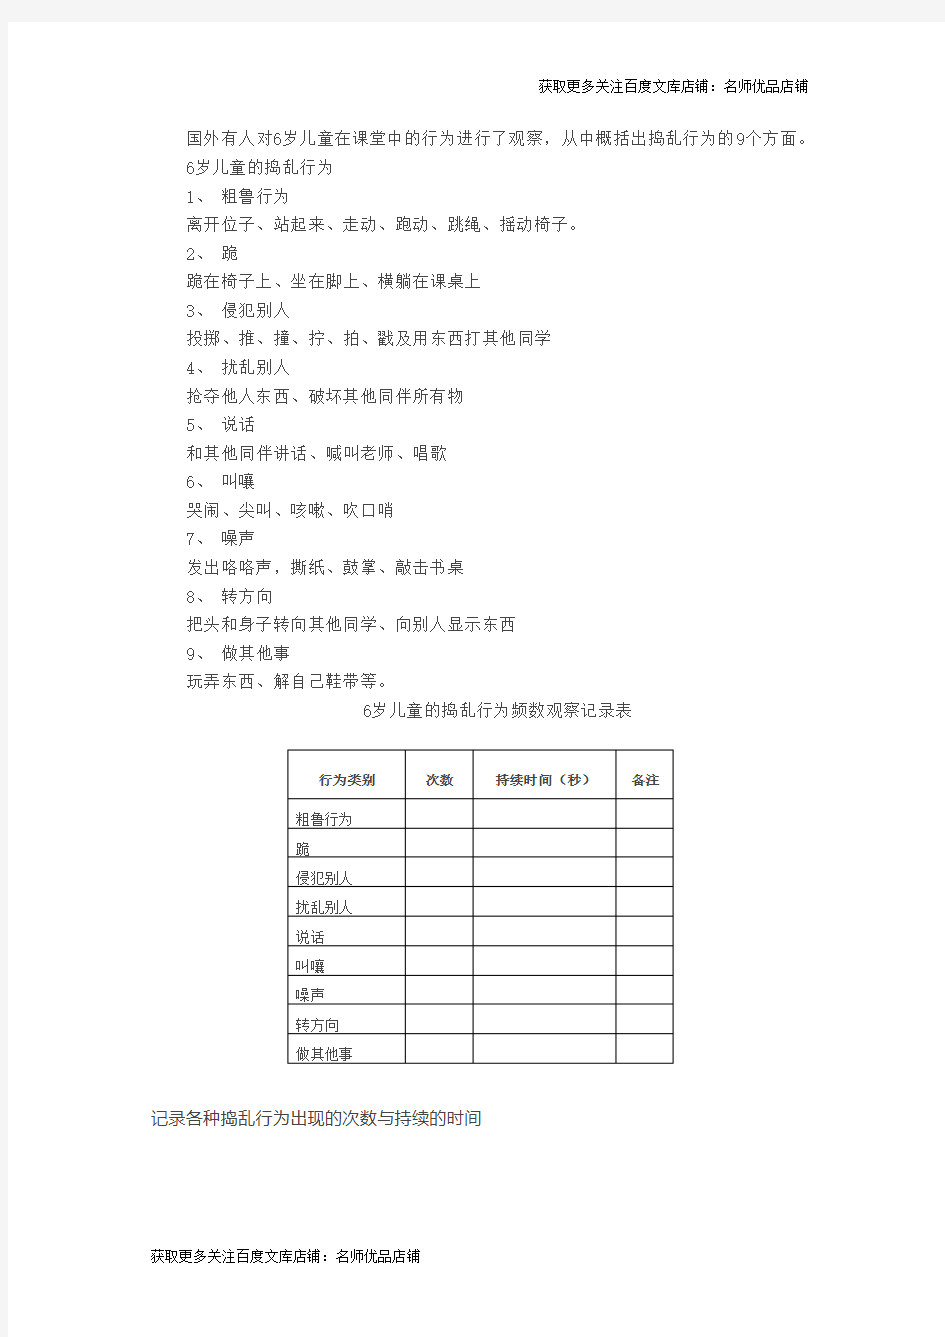 【上海金牌幼儿园内部资料】观察表：6岁儿童捣乱行为观察记录表